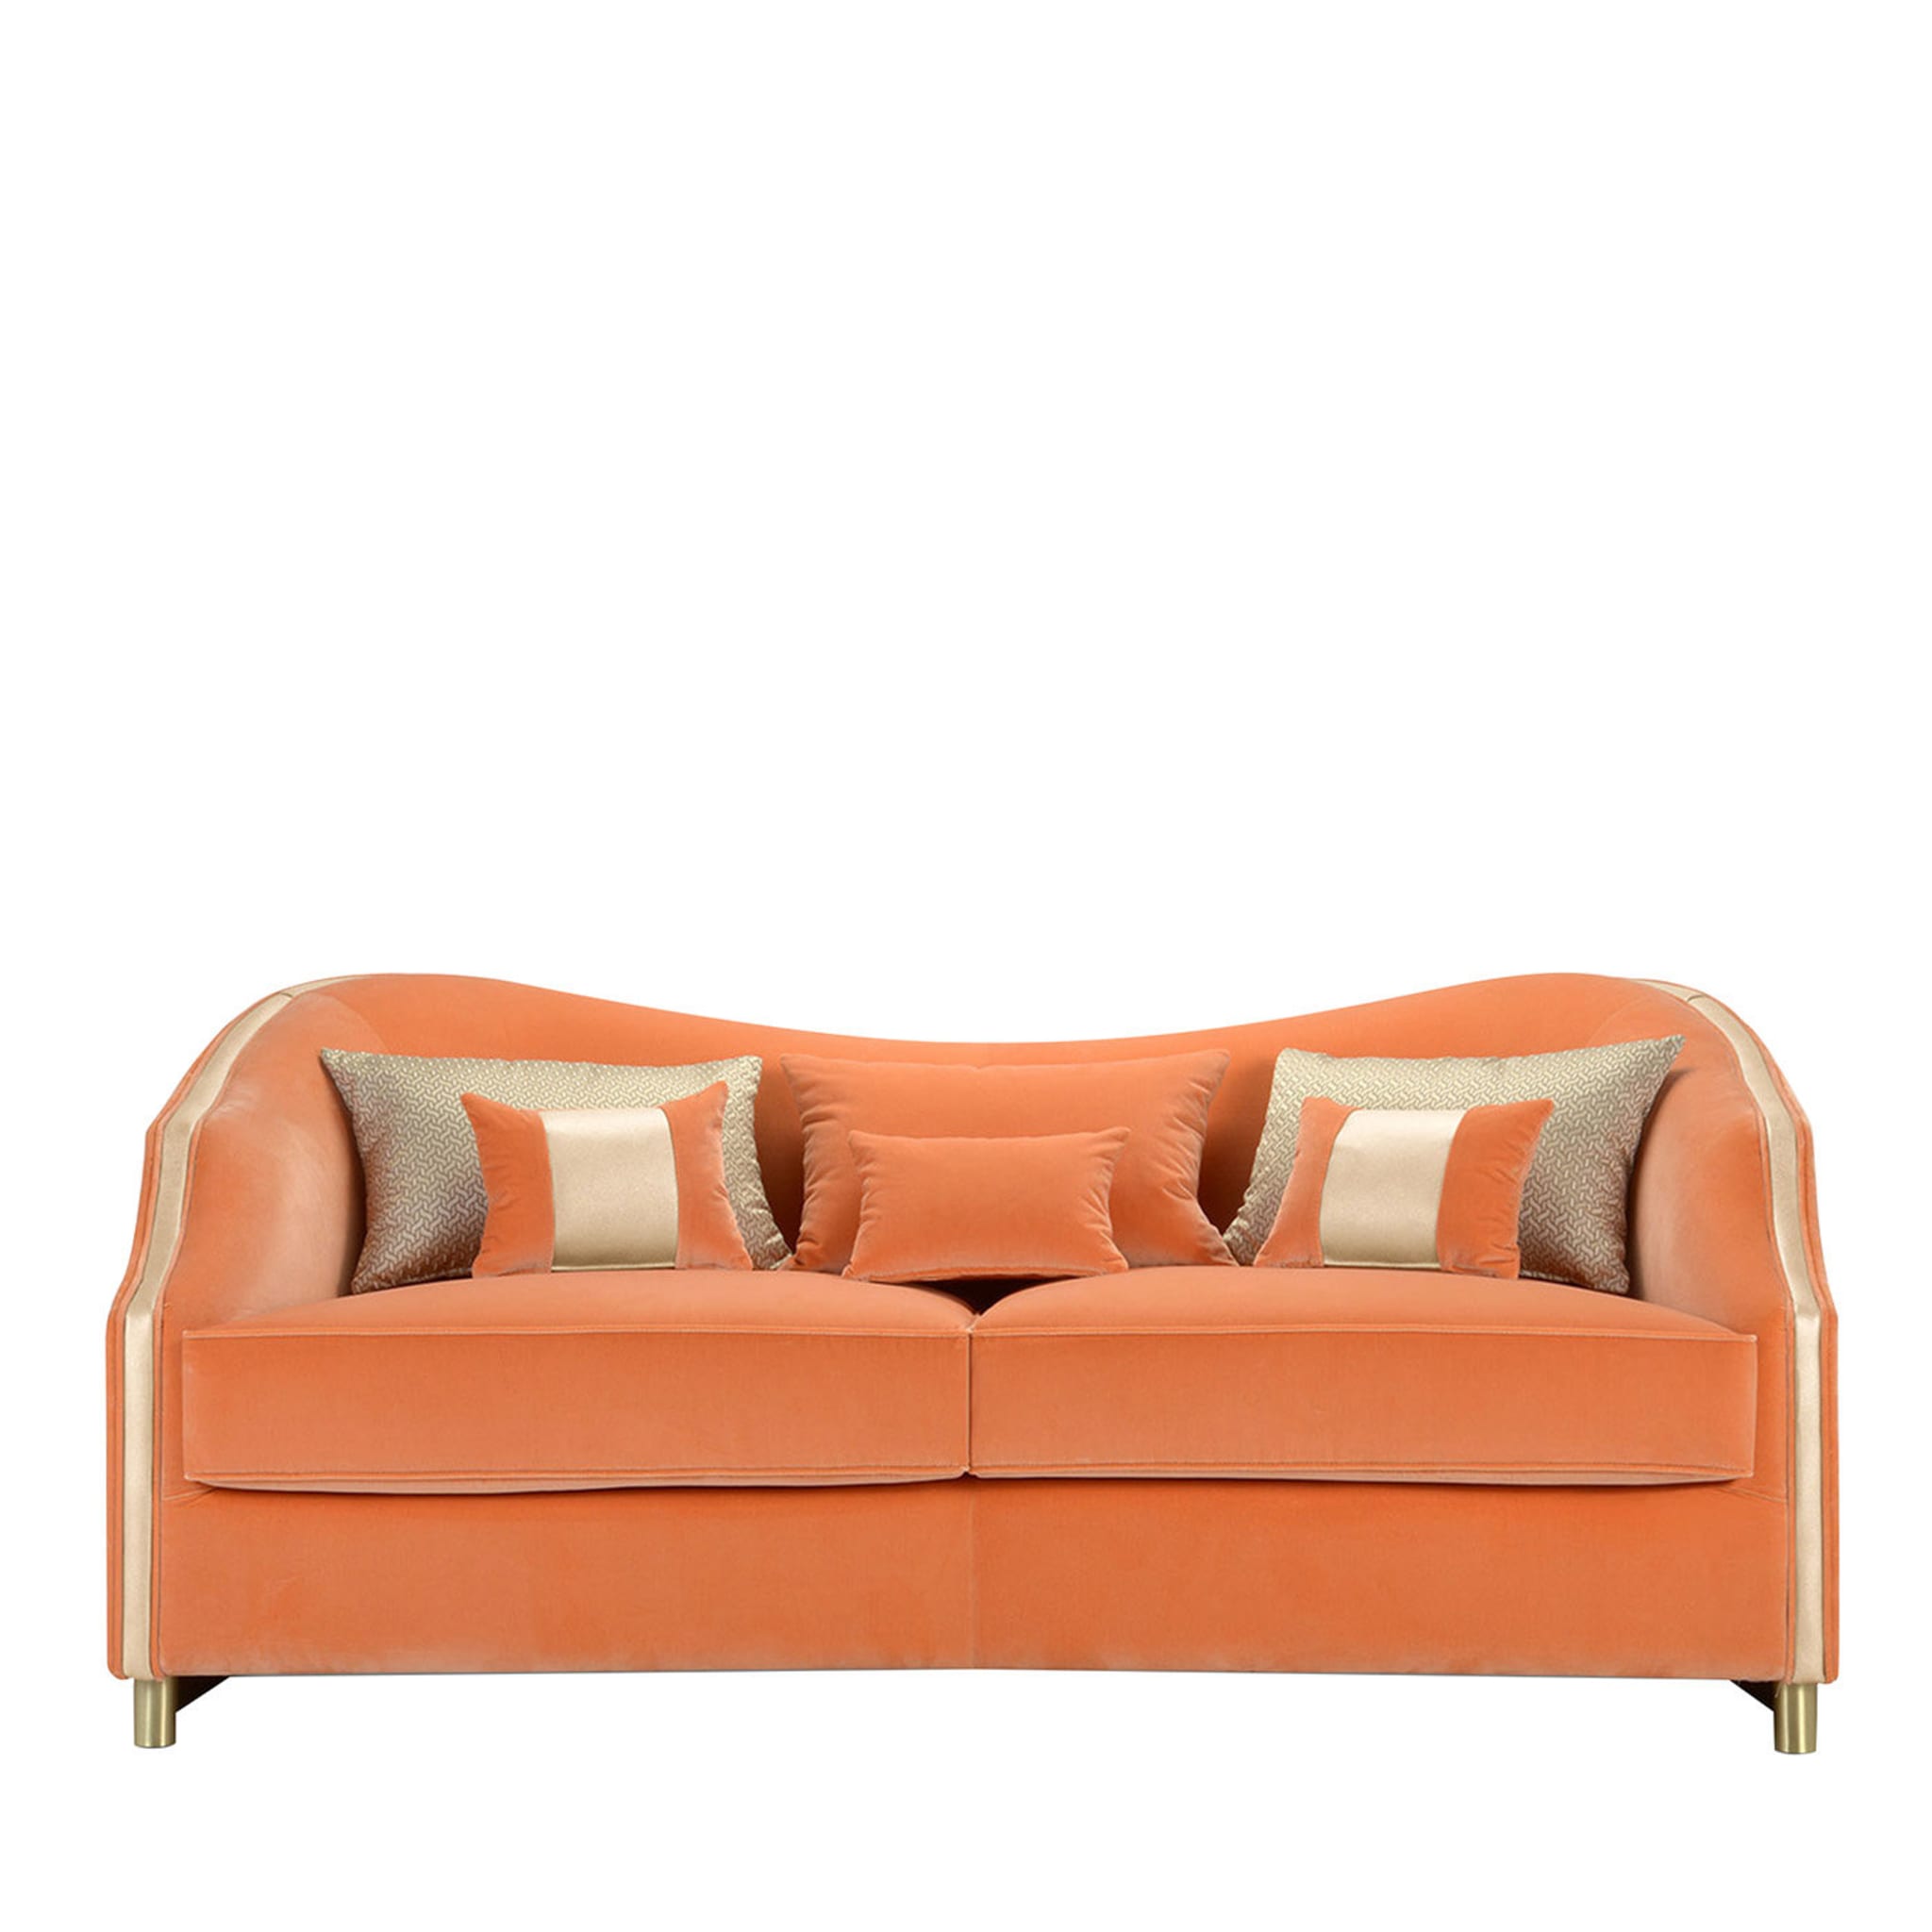 Cleio Orange 2-Seater Sofa - Main view